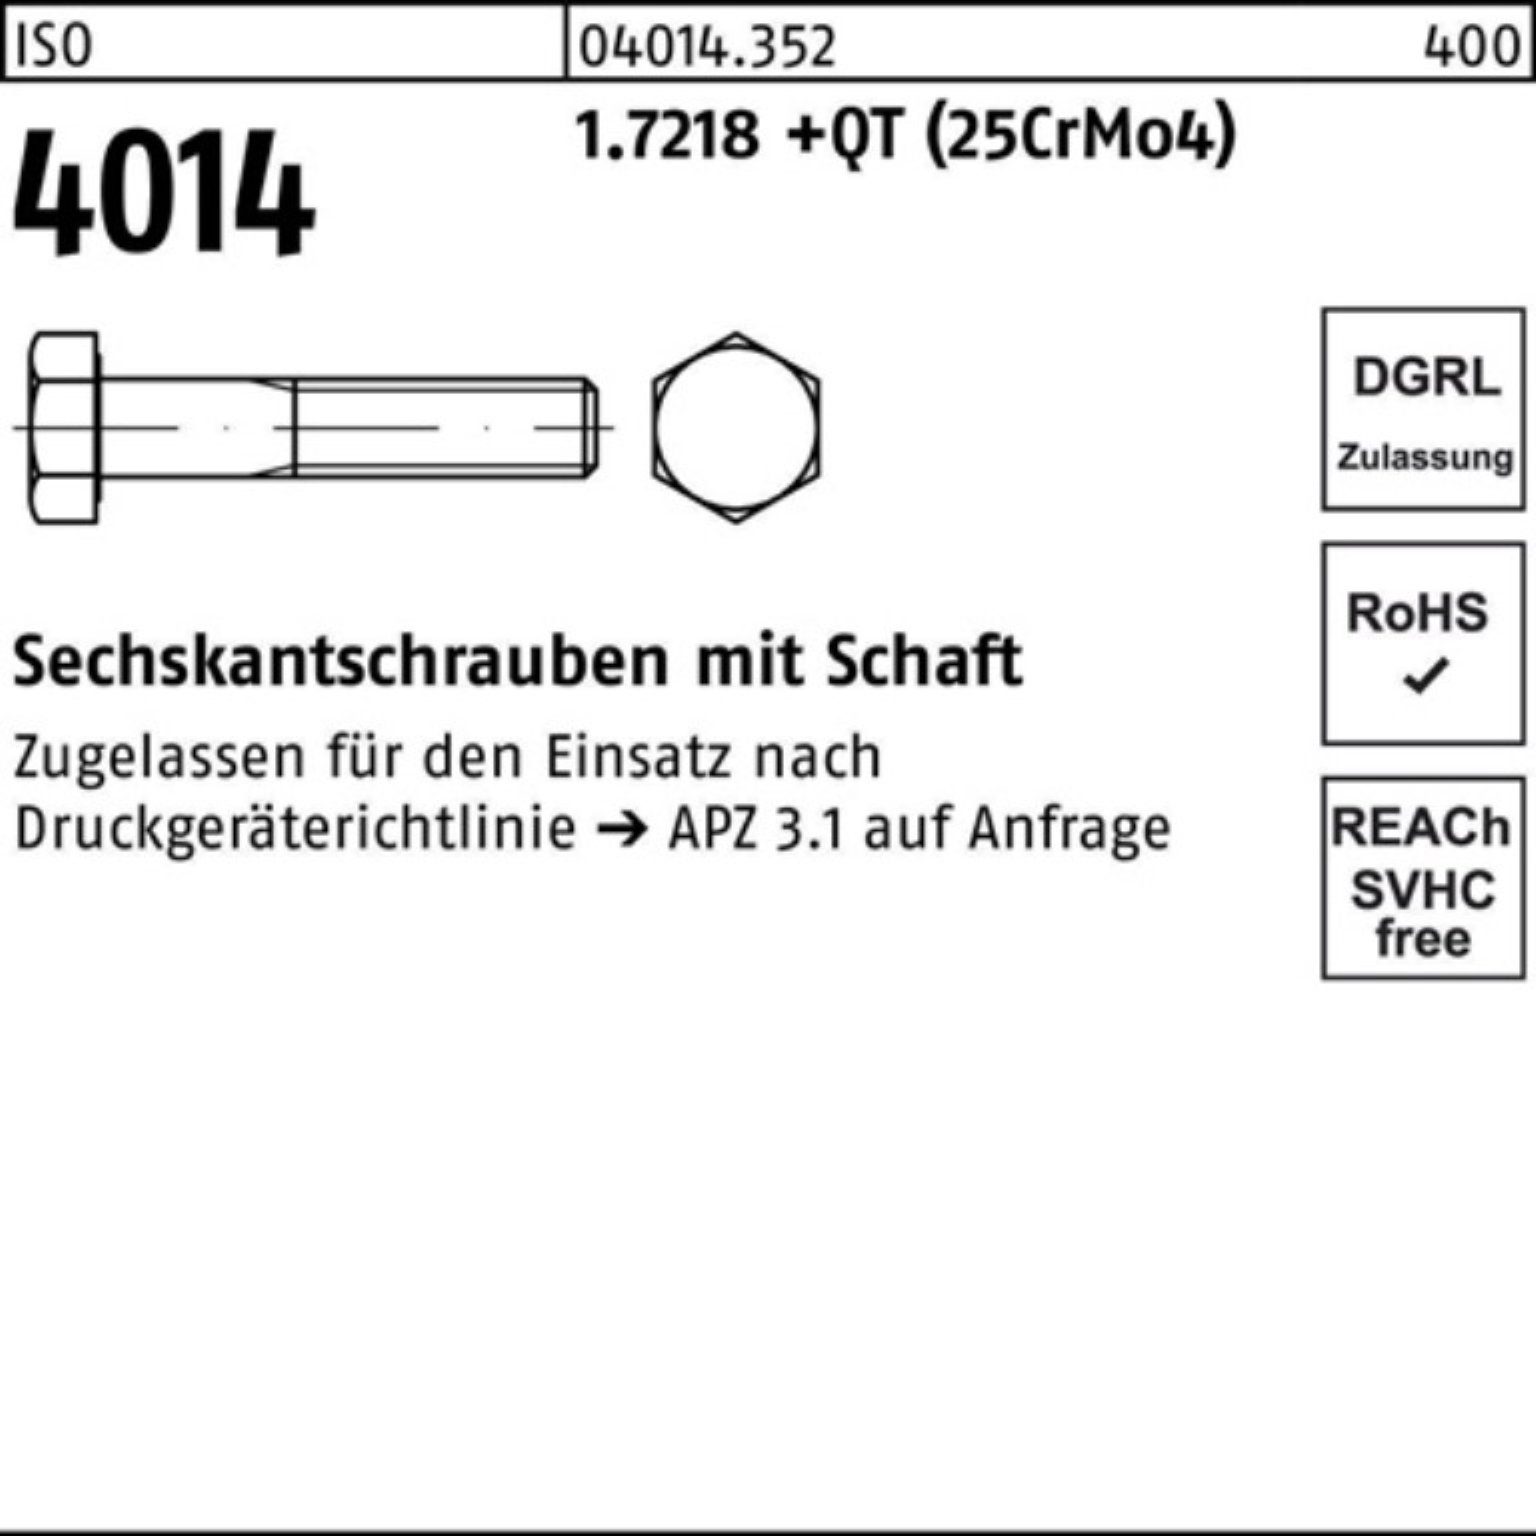 Bufab Sechskantschraube 100er Schaft 4014 +QT M36x ISO Pack 1.7218 (25Cr Sechskantschraube 120